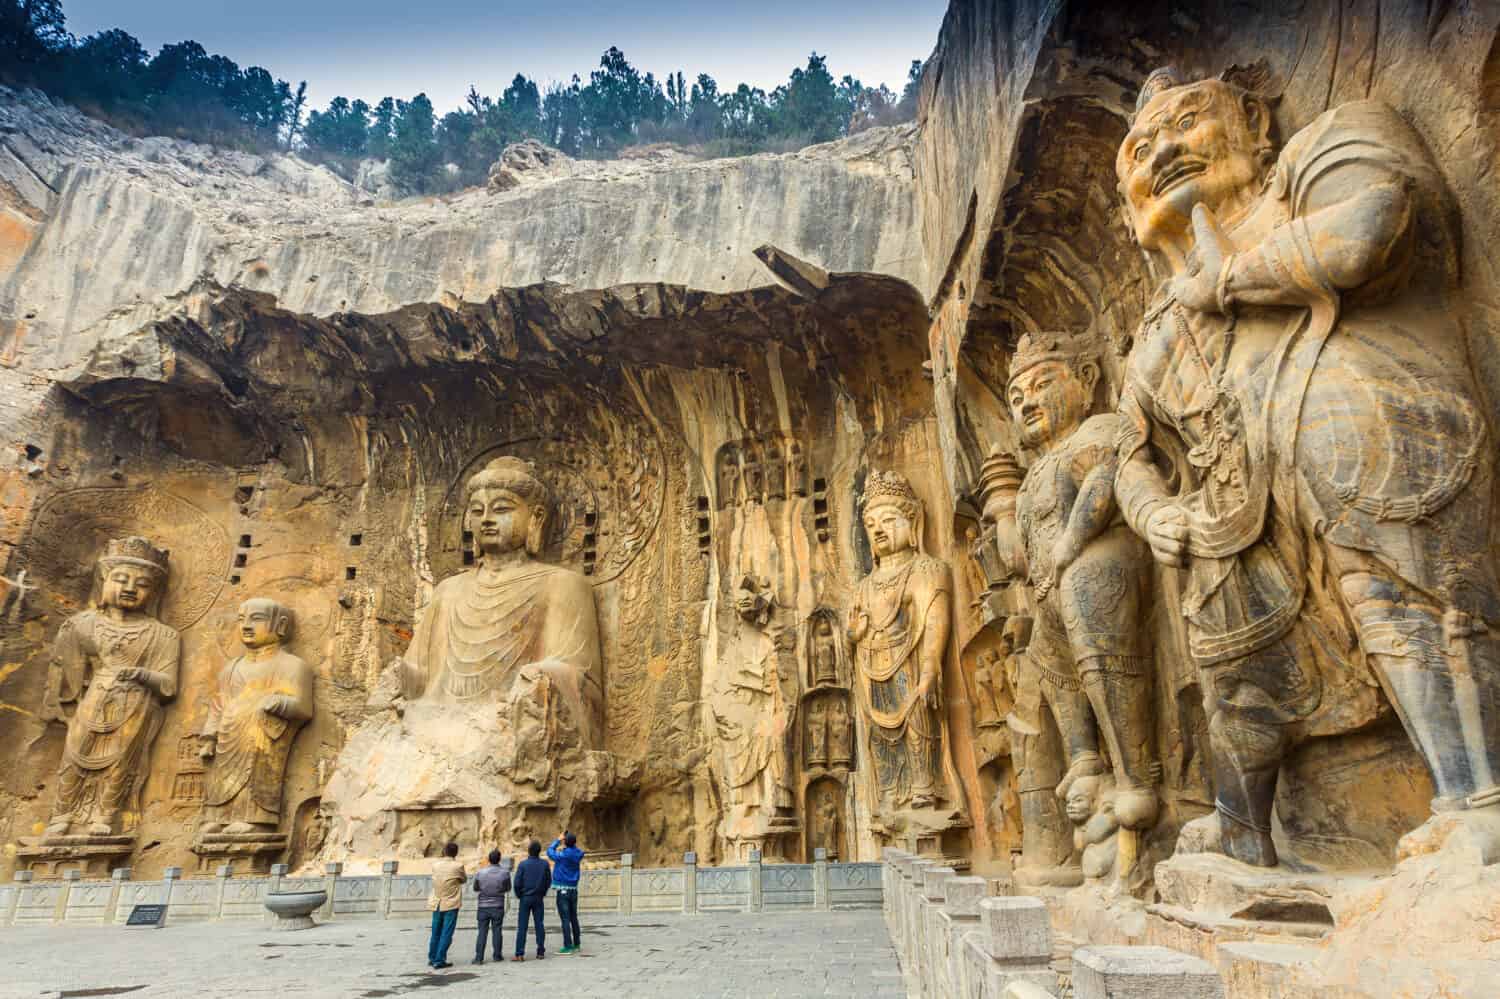 Le grotte di Longmen con le figure di Buddha iniziano con la dinastia Wei settentrionale nel 493 d.C.  È una delle quattro grotte più importanti della Cina.